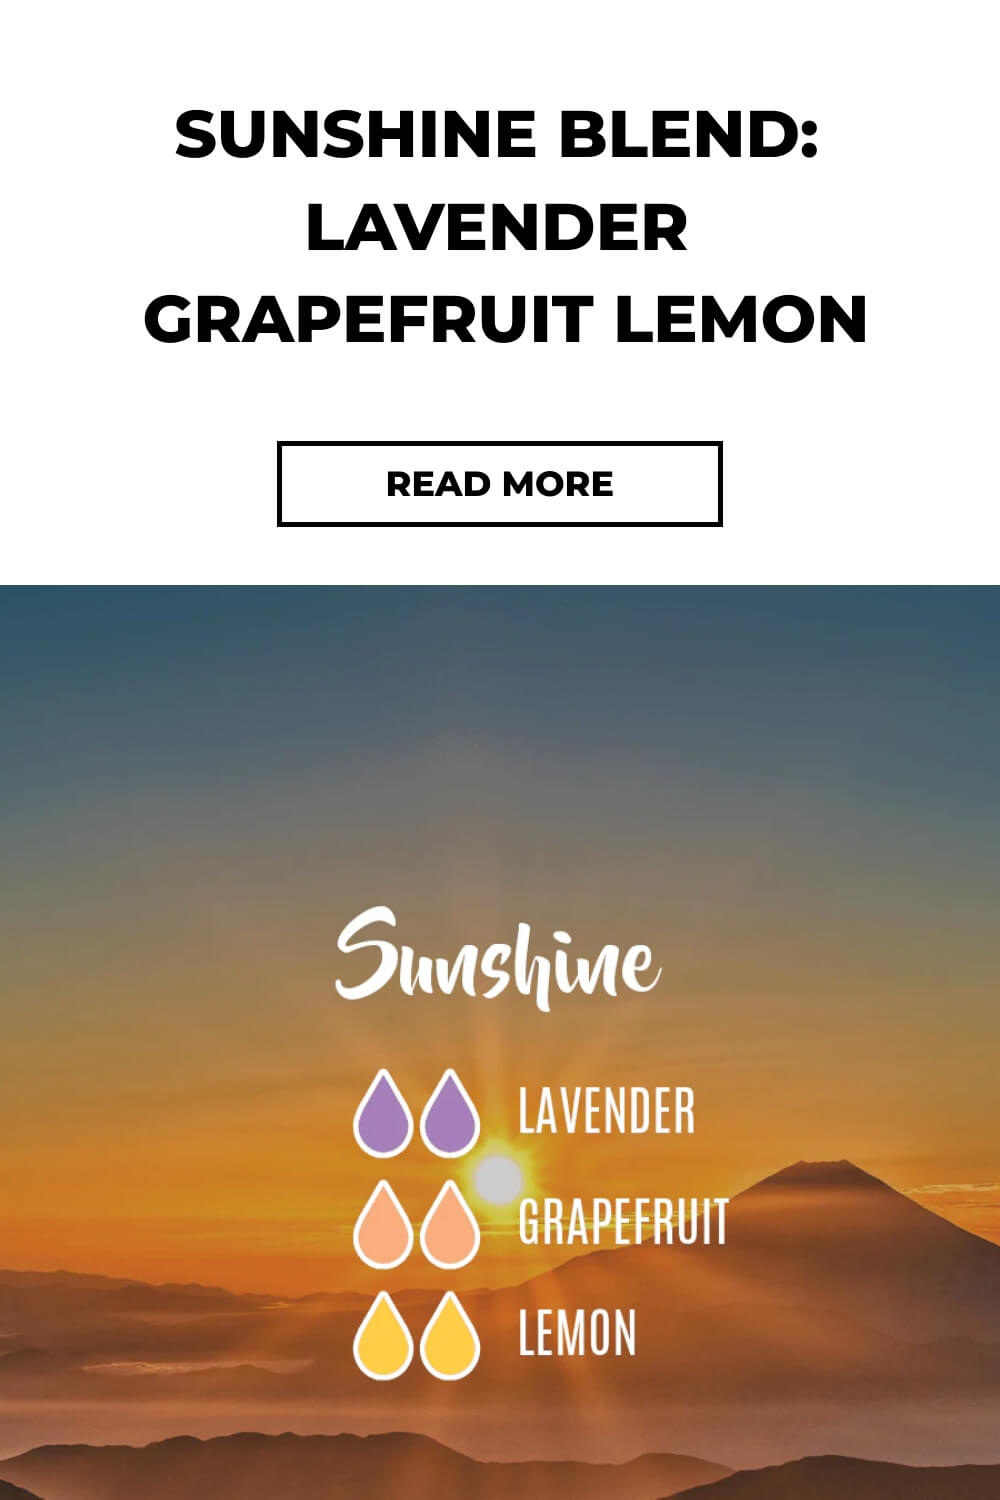 Sunshine Blend Lavender Grapefruit Lemon